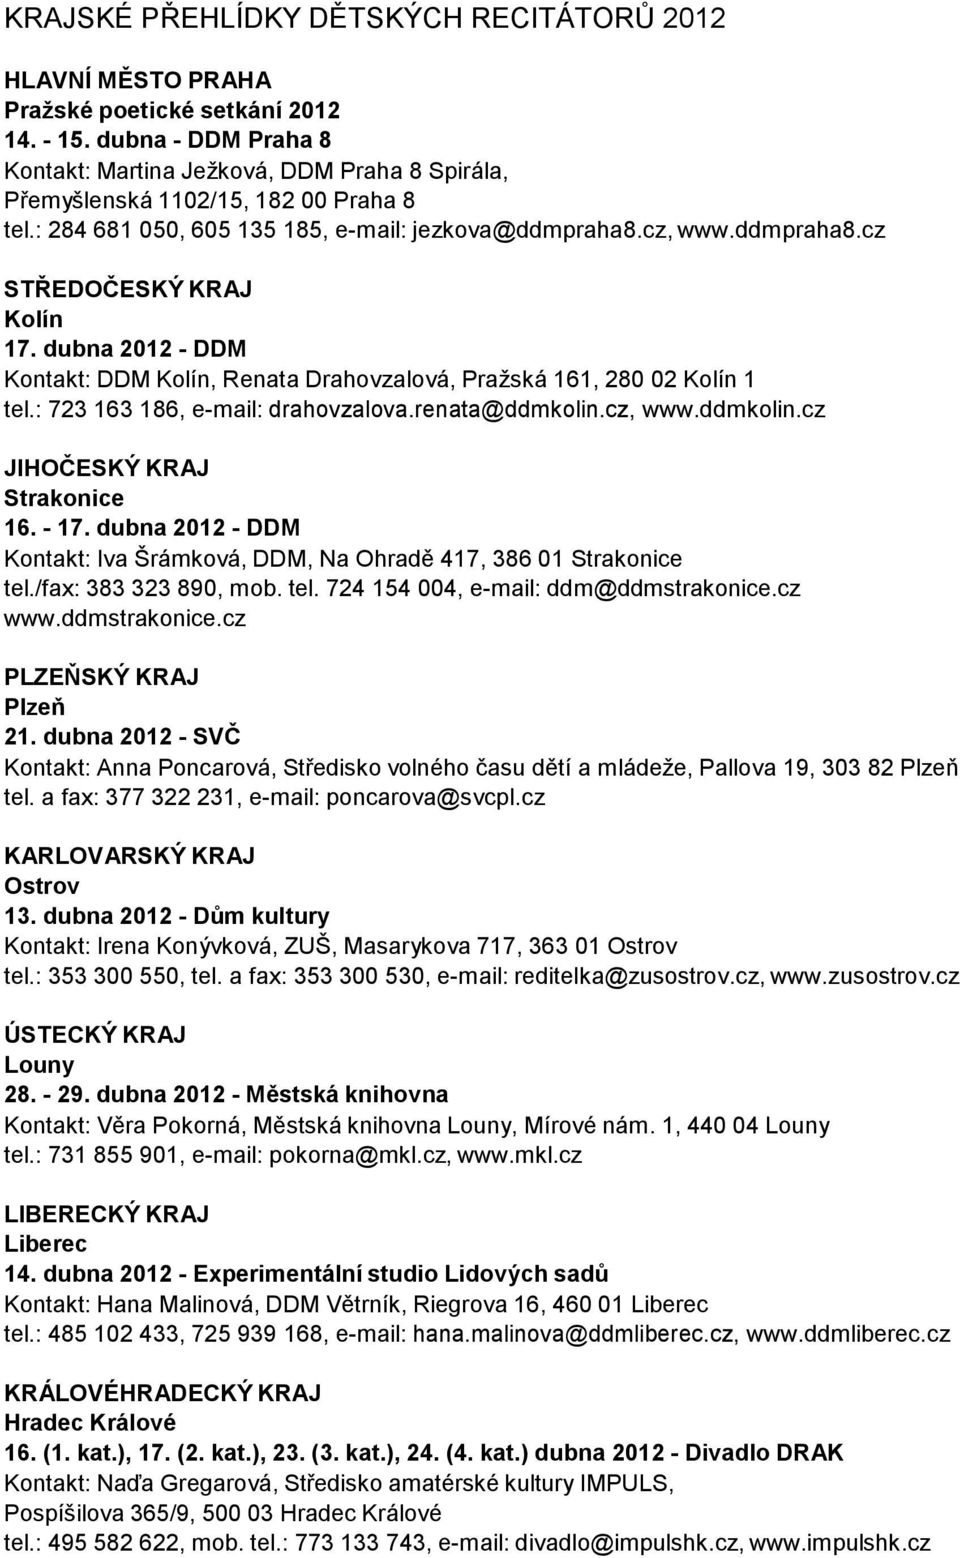 dubna 2012 - DDM Kontakt: DDM Kolín, Renata Drahovzalová, Pražská 161, 280 02 Kolín 1 tel.: 723 163 186, e-mail: drahovzalova.renata@ddmkolin.cz, www.ddmkolin.cz JIHOČESKÝ KRAJ Strakonice 16. - 17.